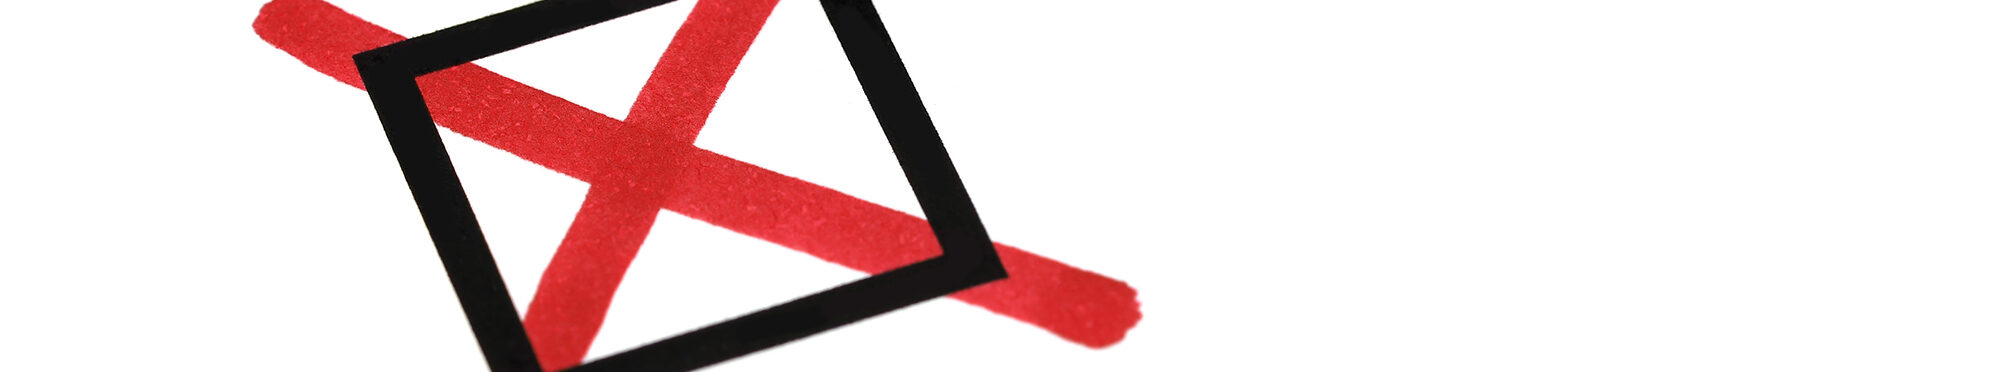 schwarzes Kästchen mit rotem Stift ankreuzen